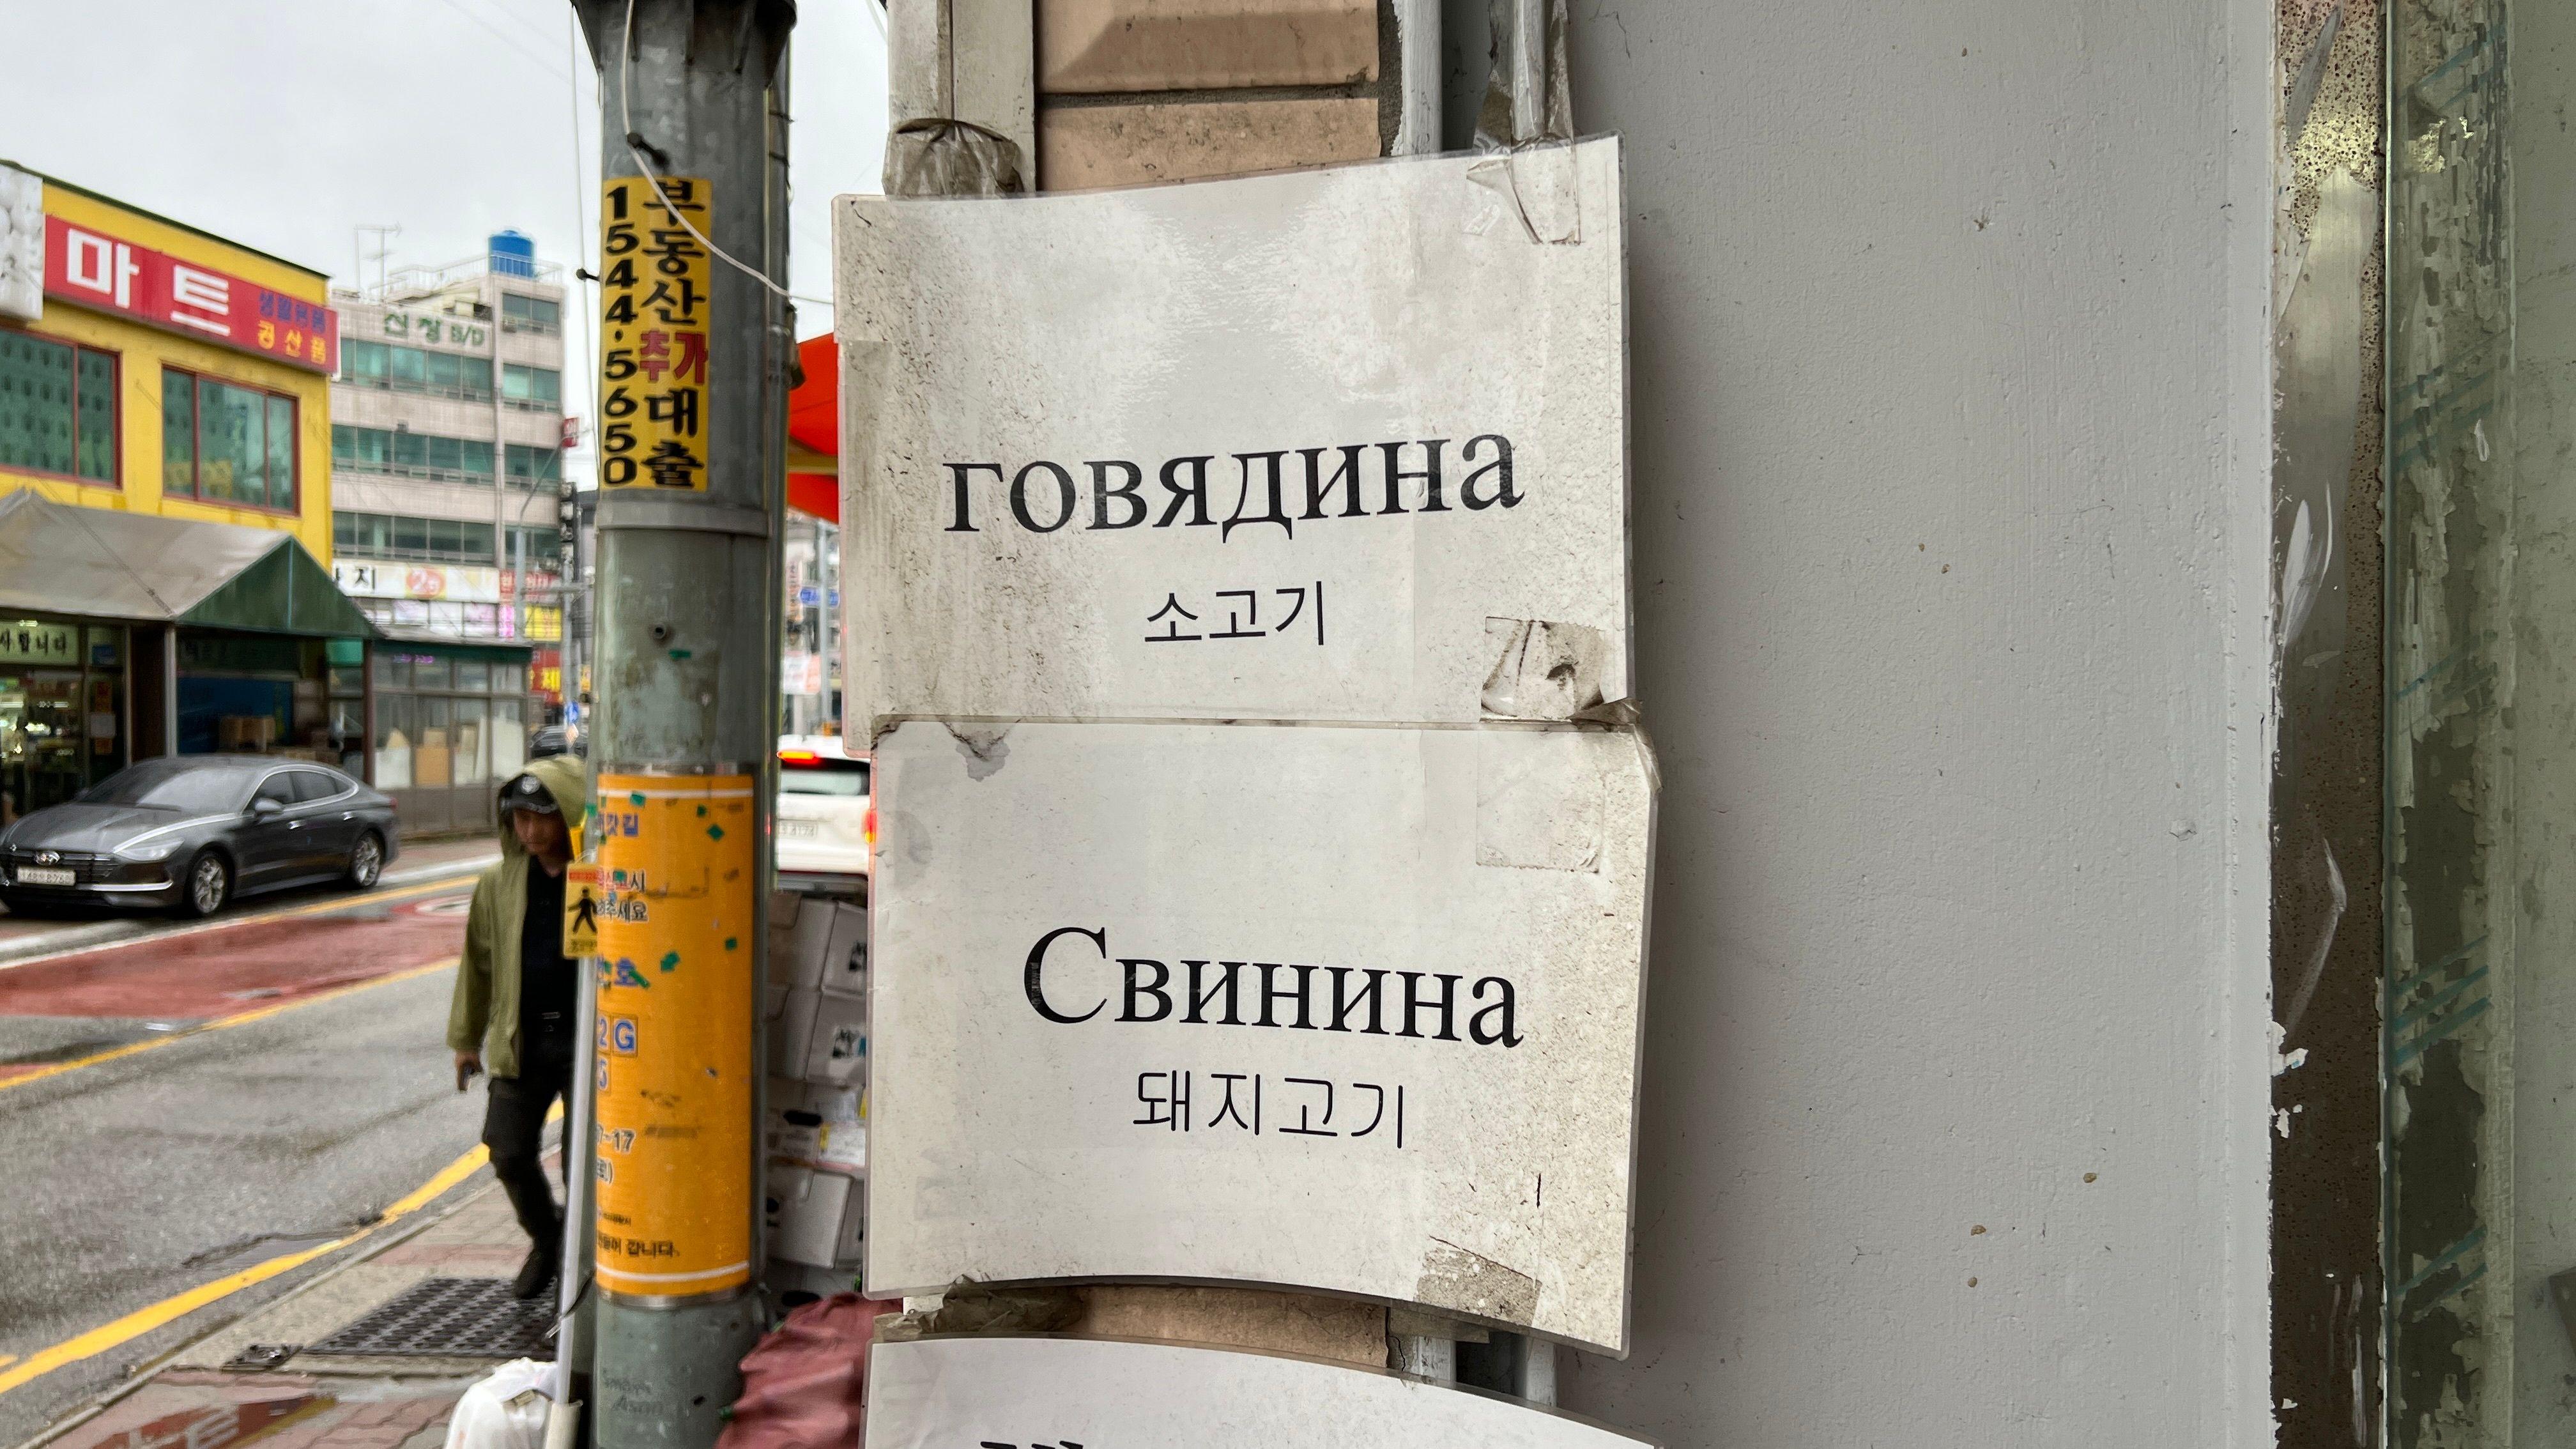  Carteles en ruso en el distrito Sinchang de Asan